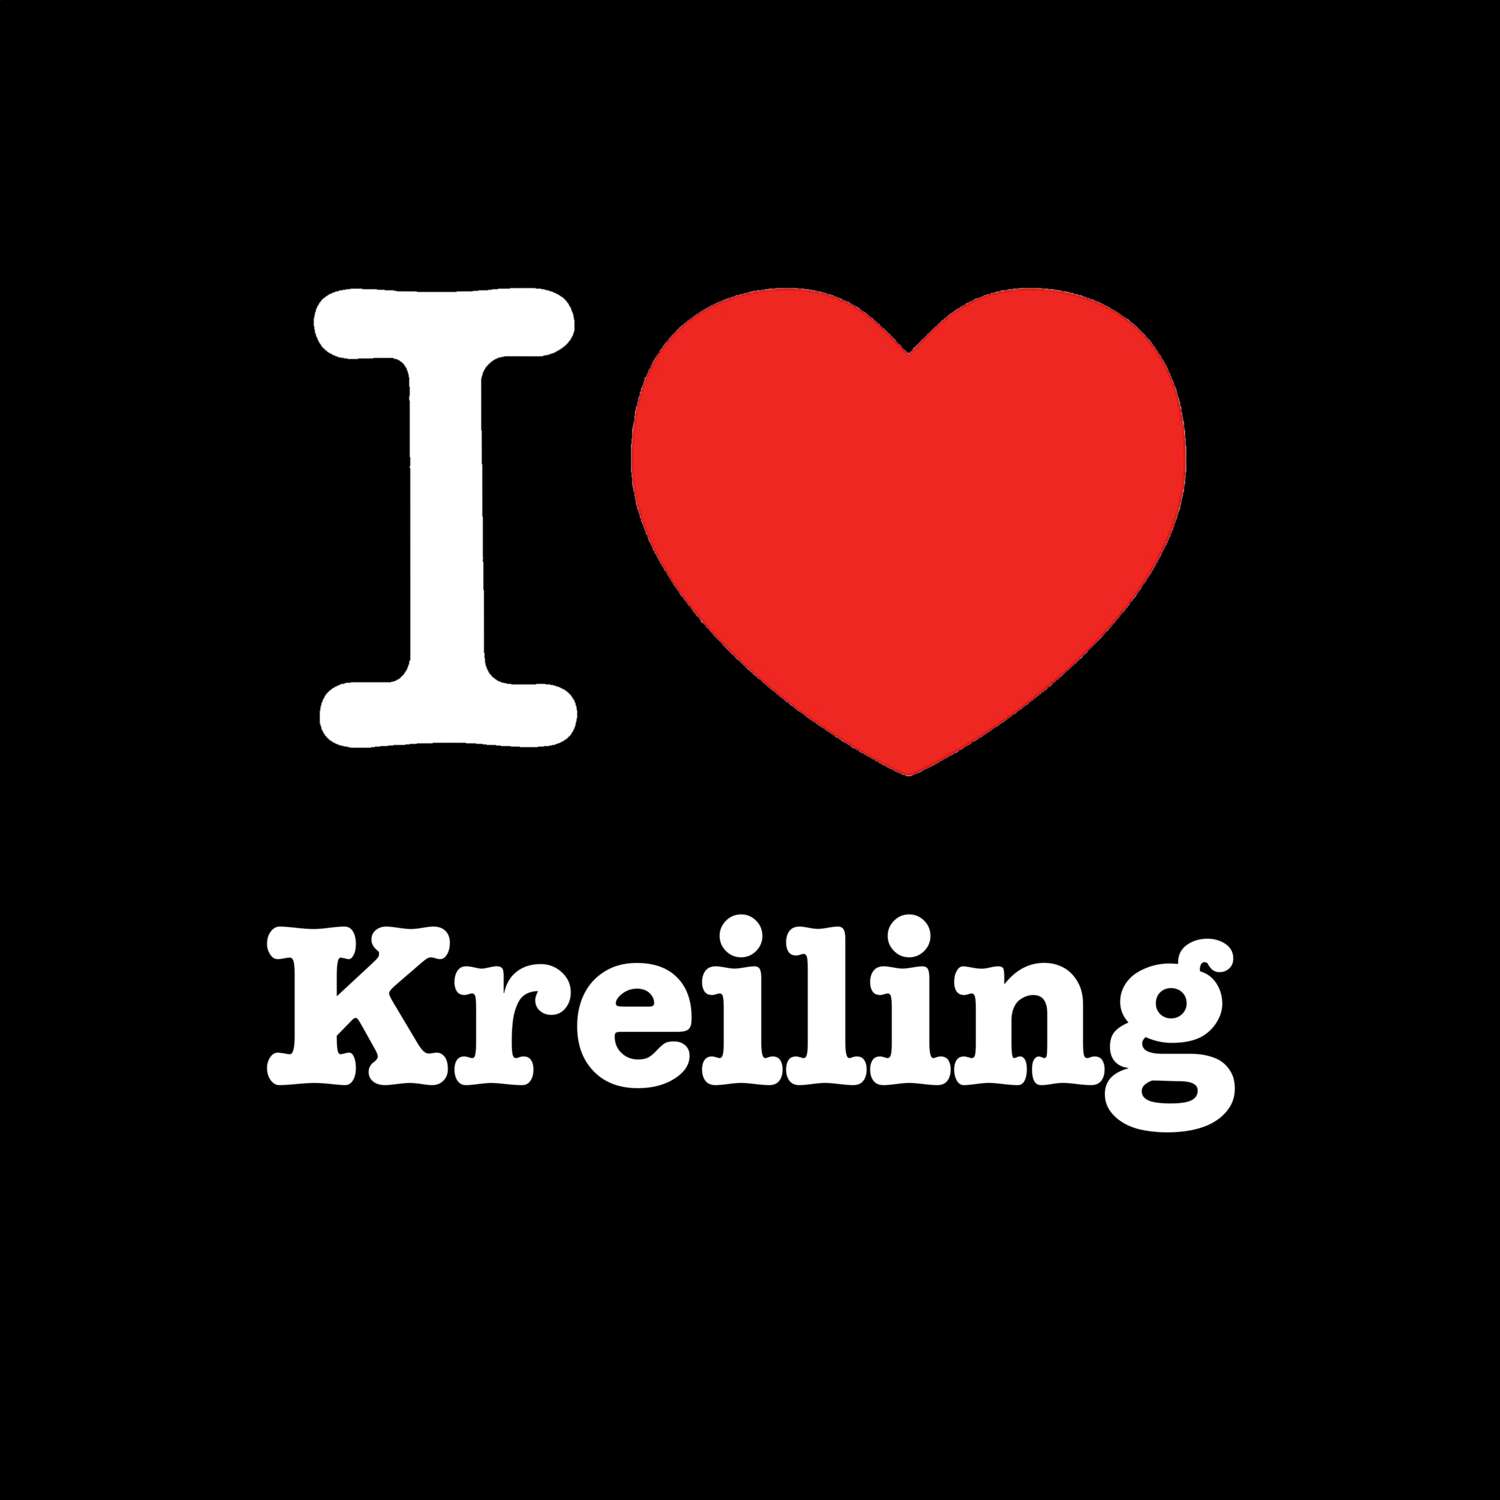 Kreiling T-Shirt »I love«